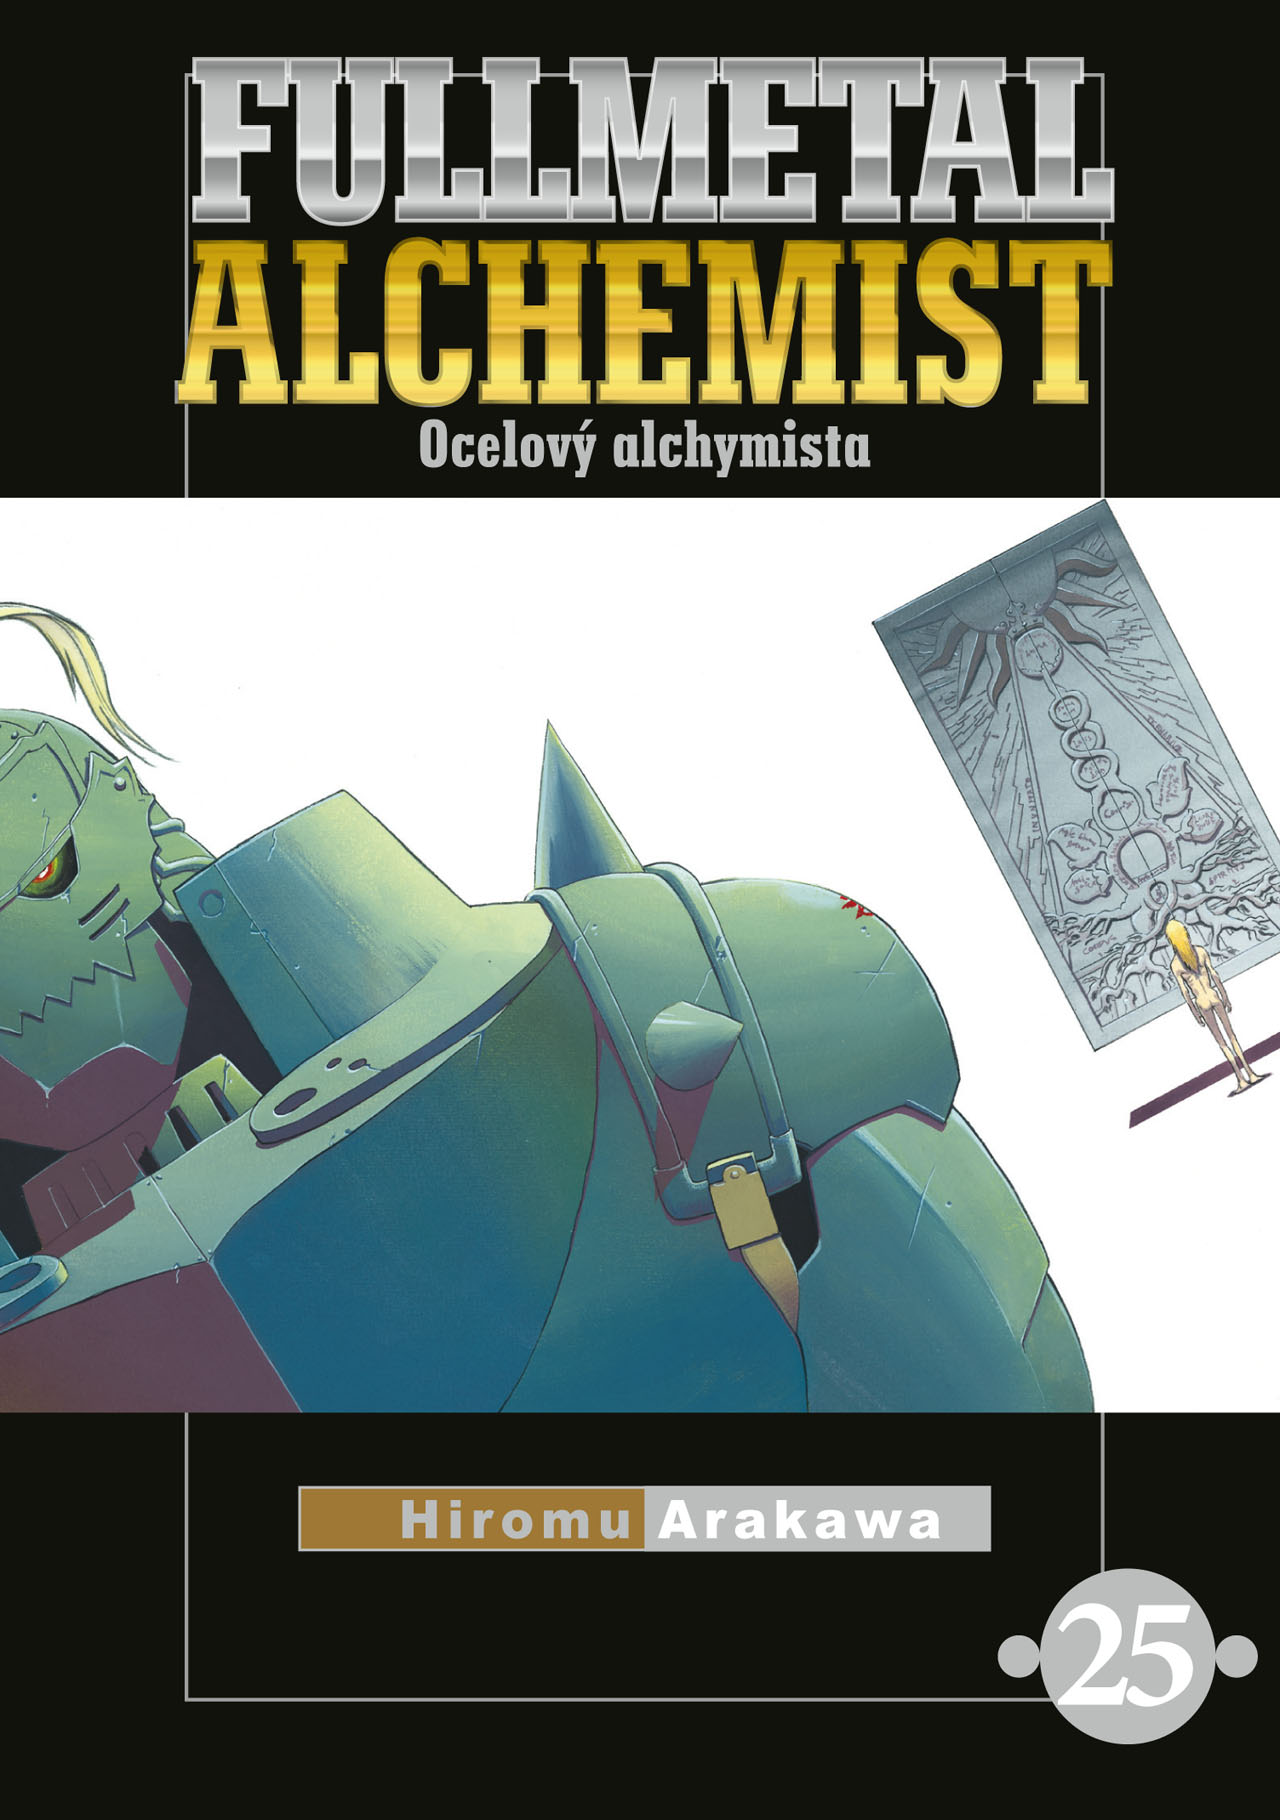 obrázek k novince - Fullmetal Alchemist - Ocelový alchymista 25